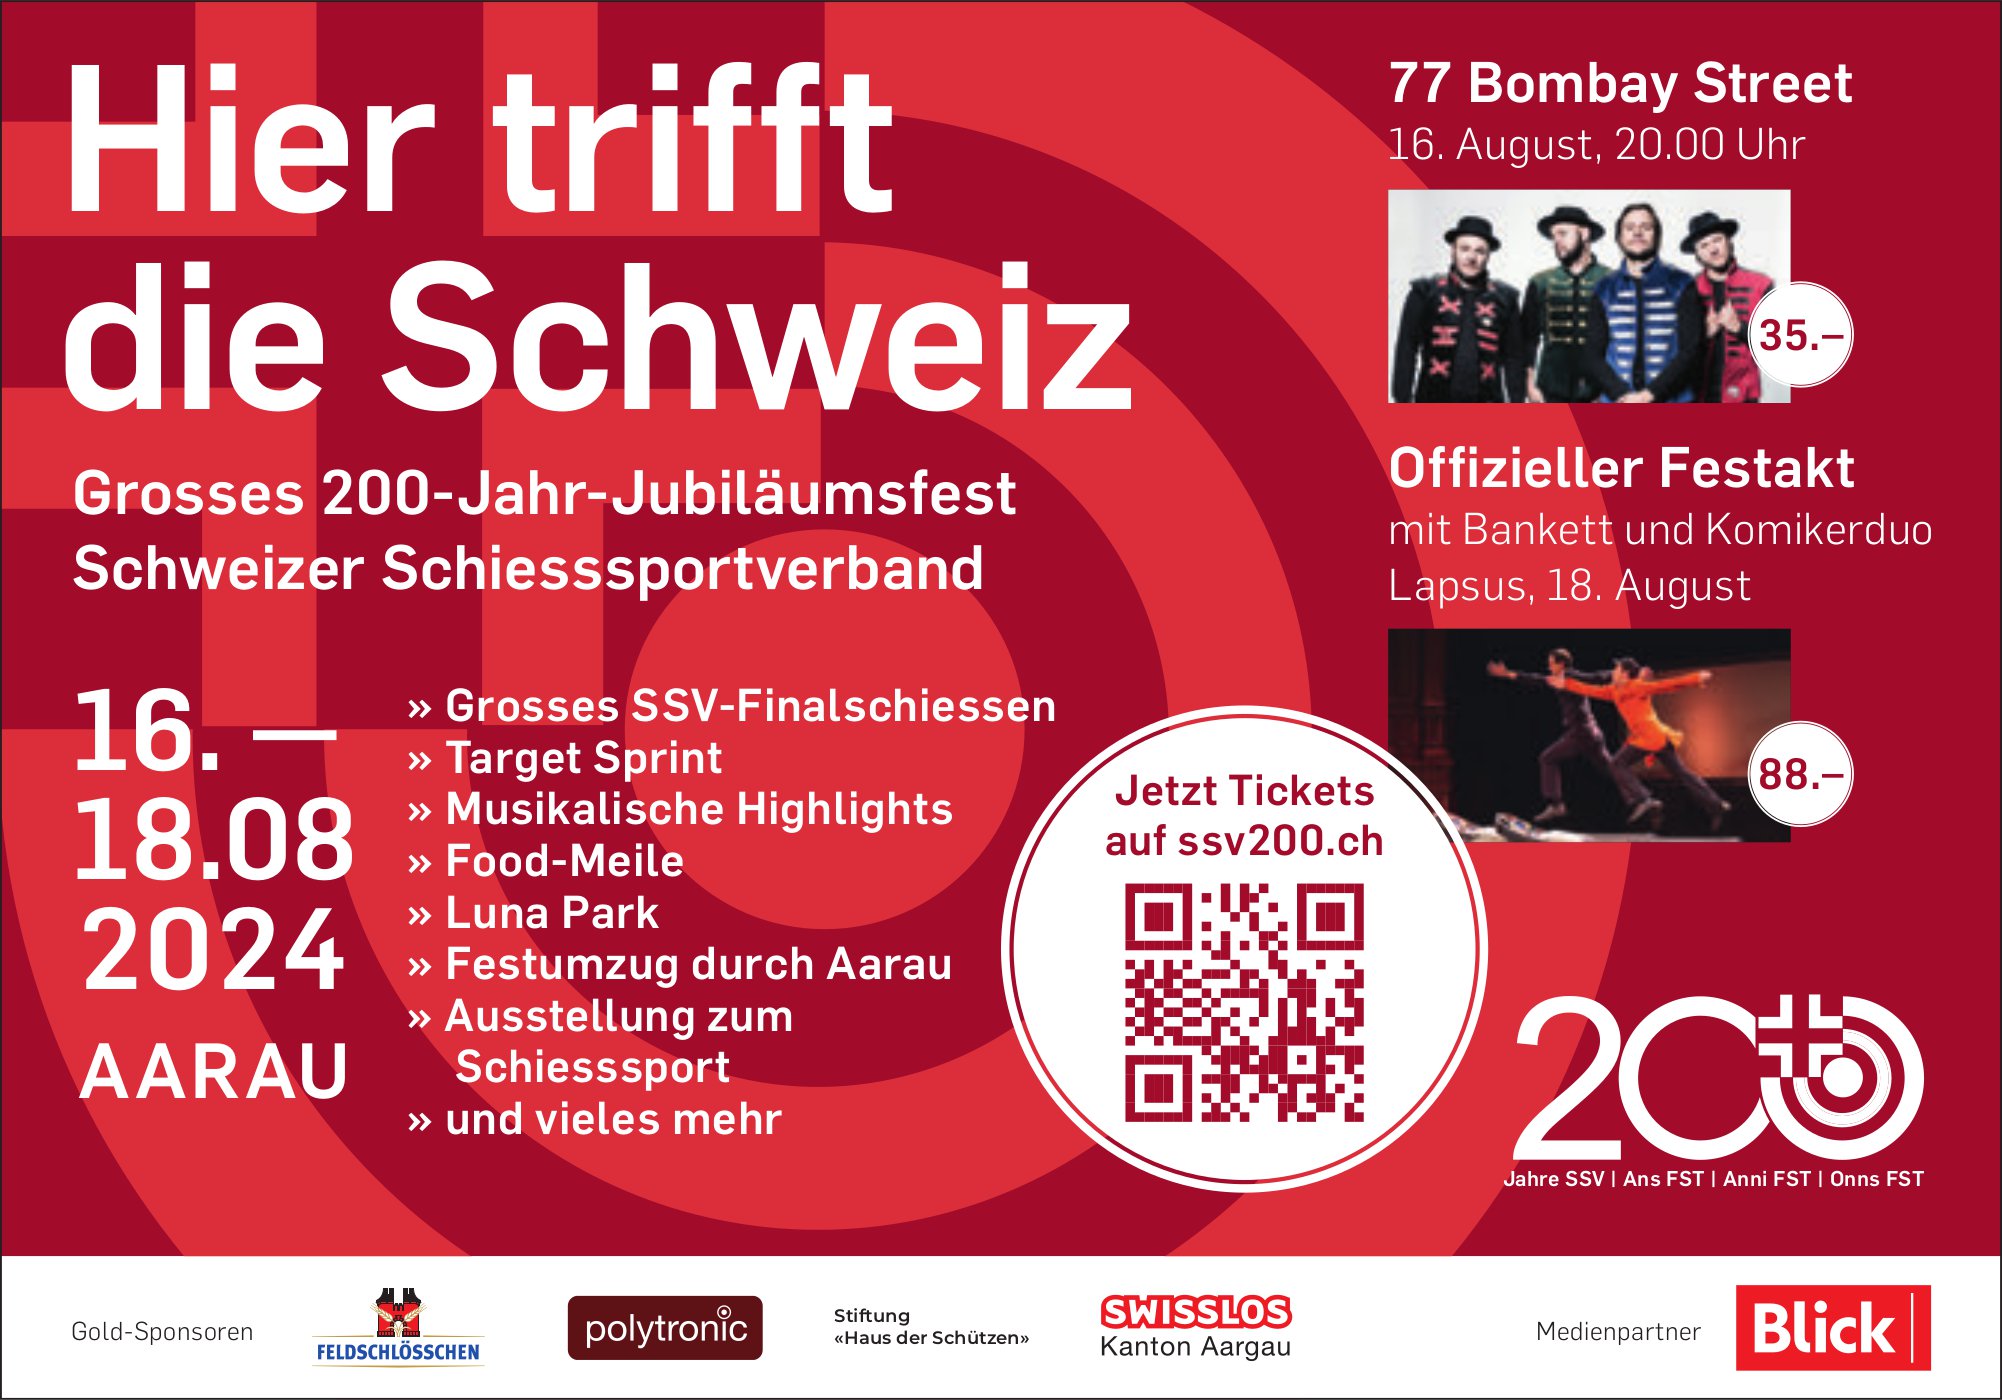 Grosses 200-Jahr-Jubiläumsfest Schweizer Schiesssportverband, 16. bis 18. August, Aarau